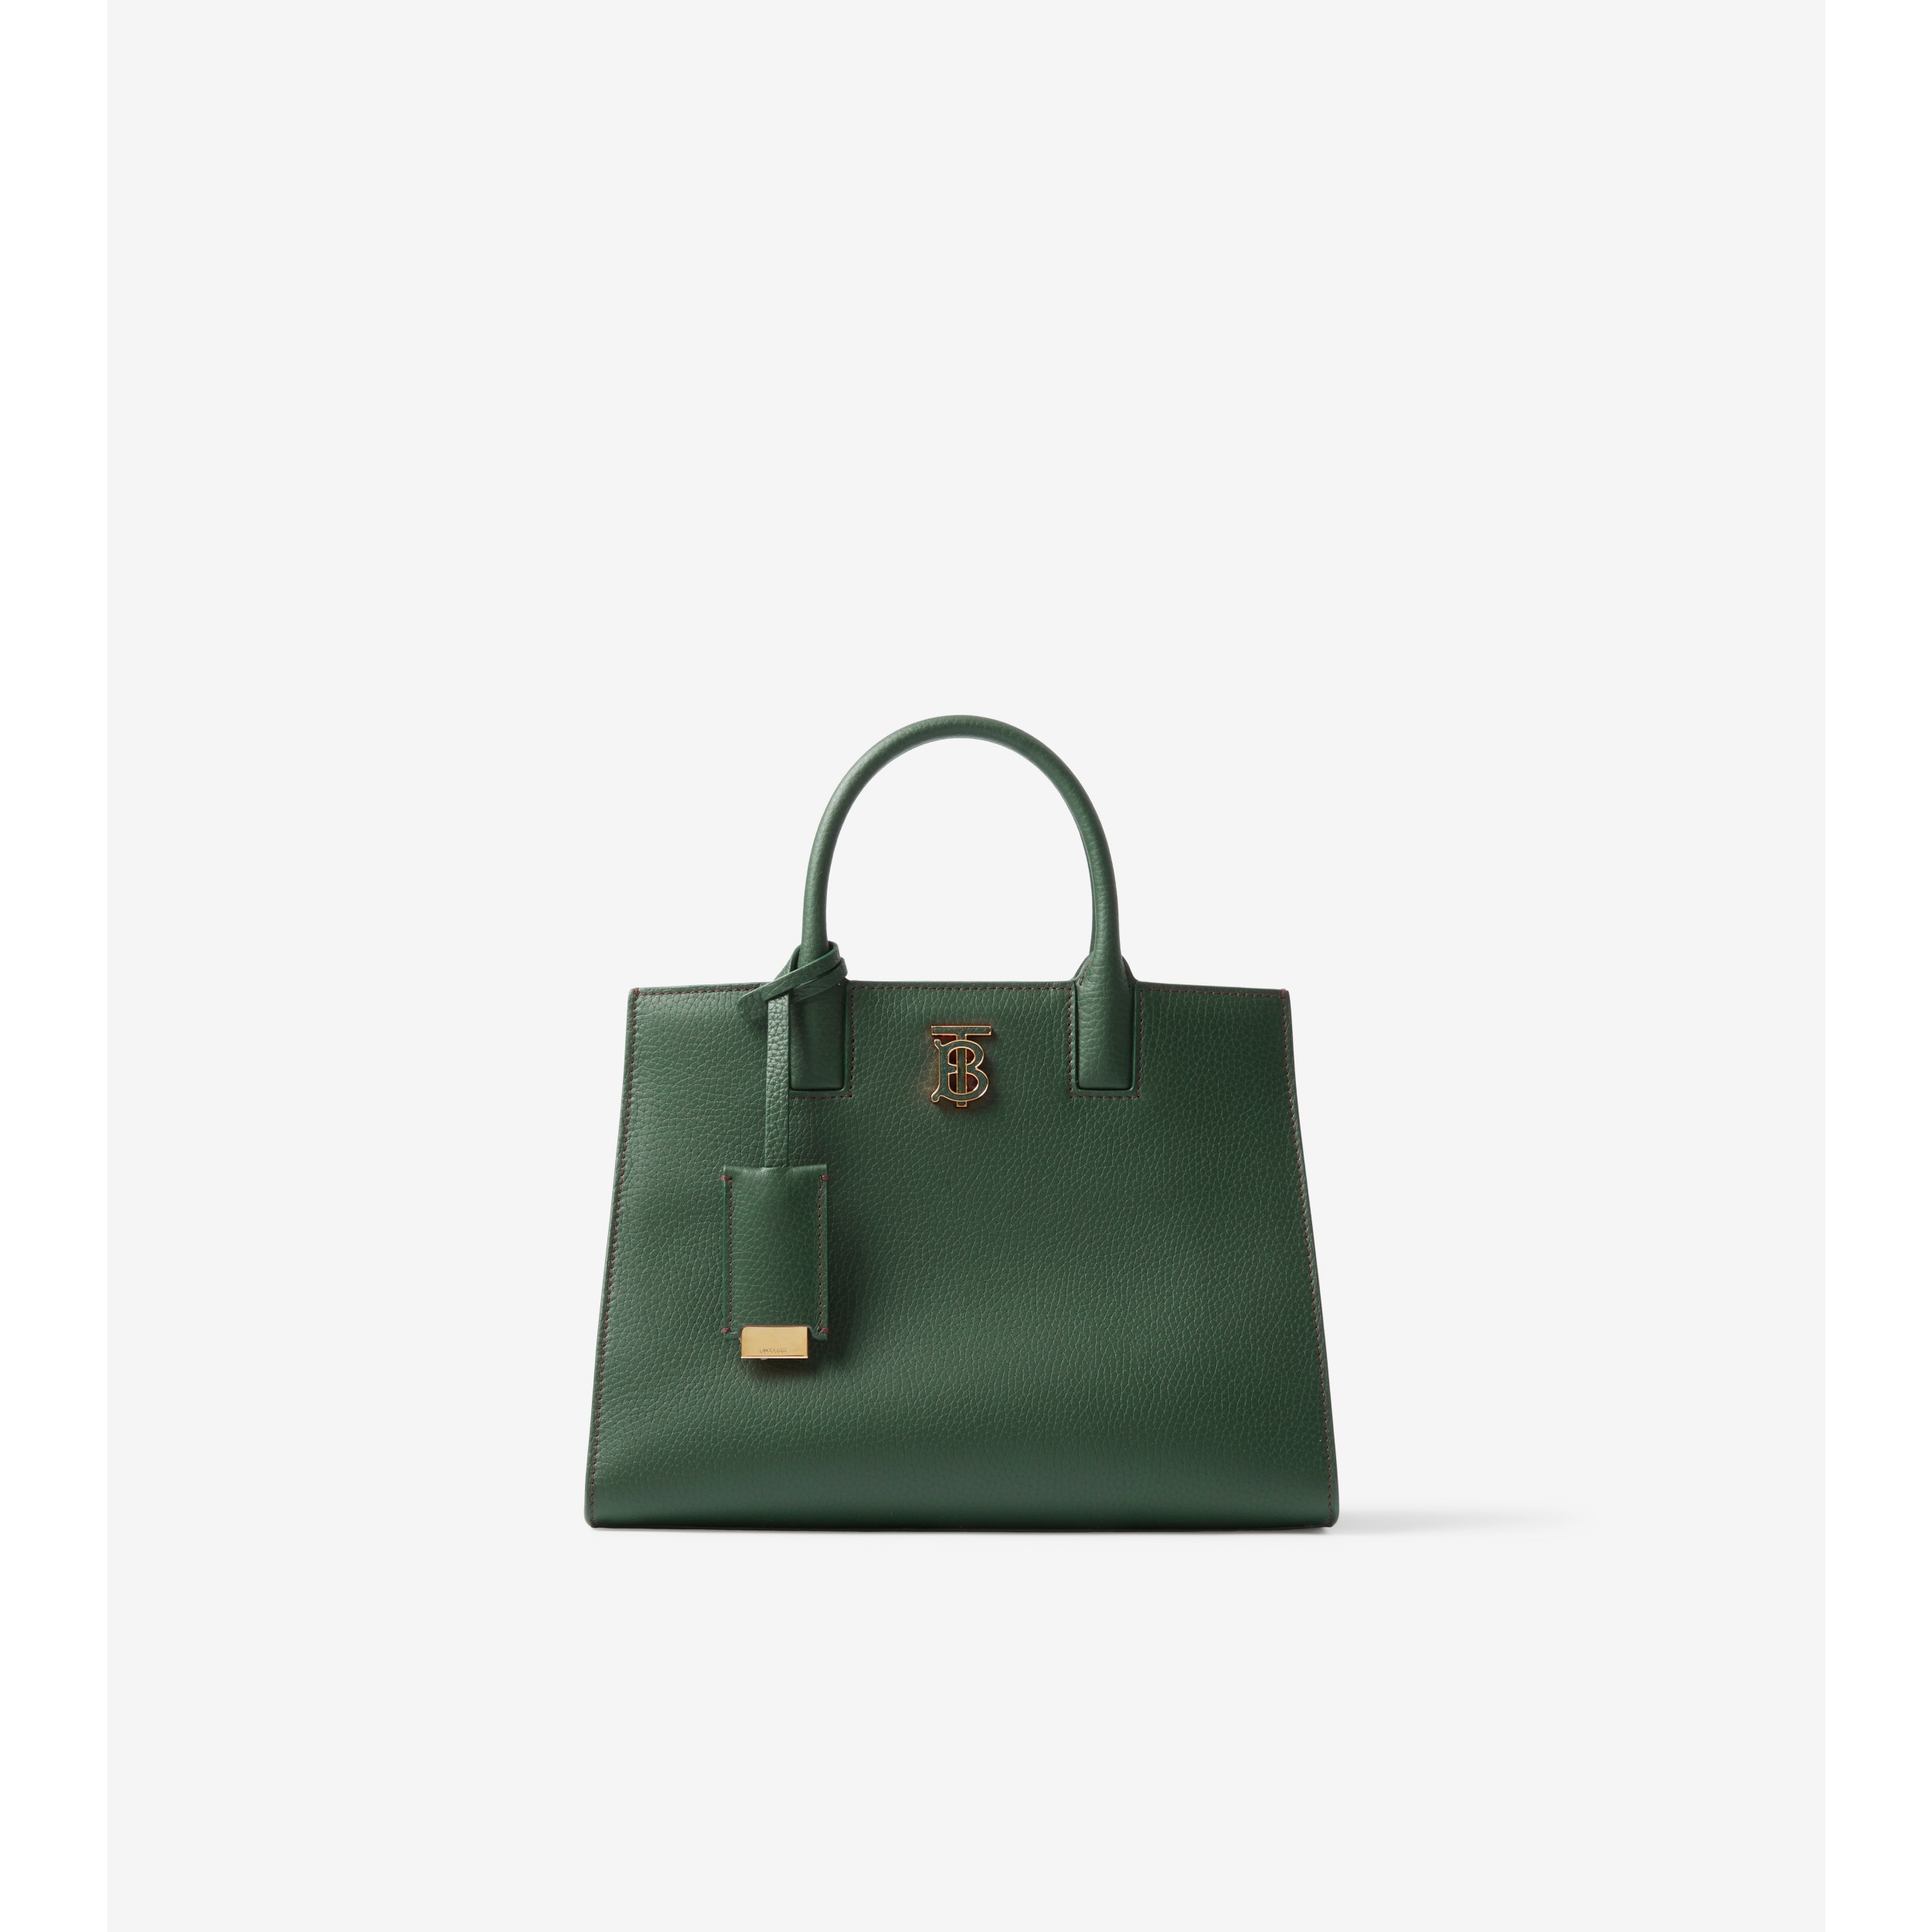 BURBERRY, Pocket Mini Handbag, Women, Mini Bags